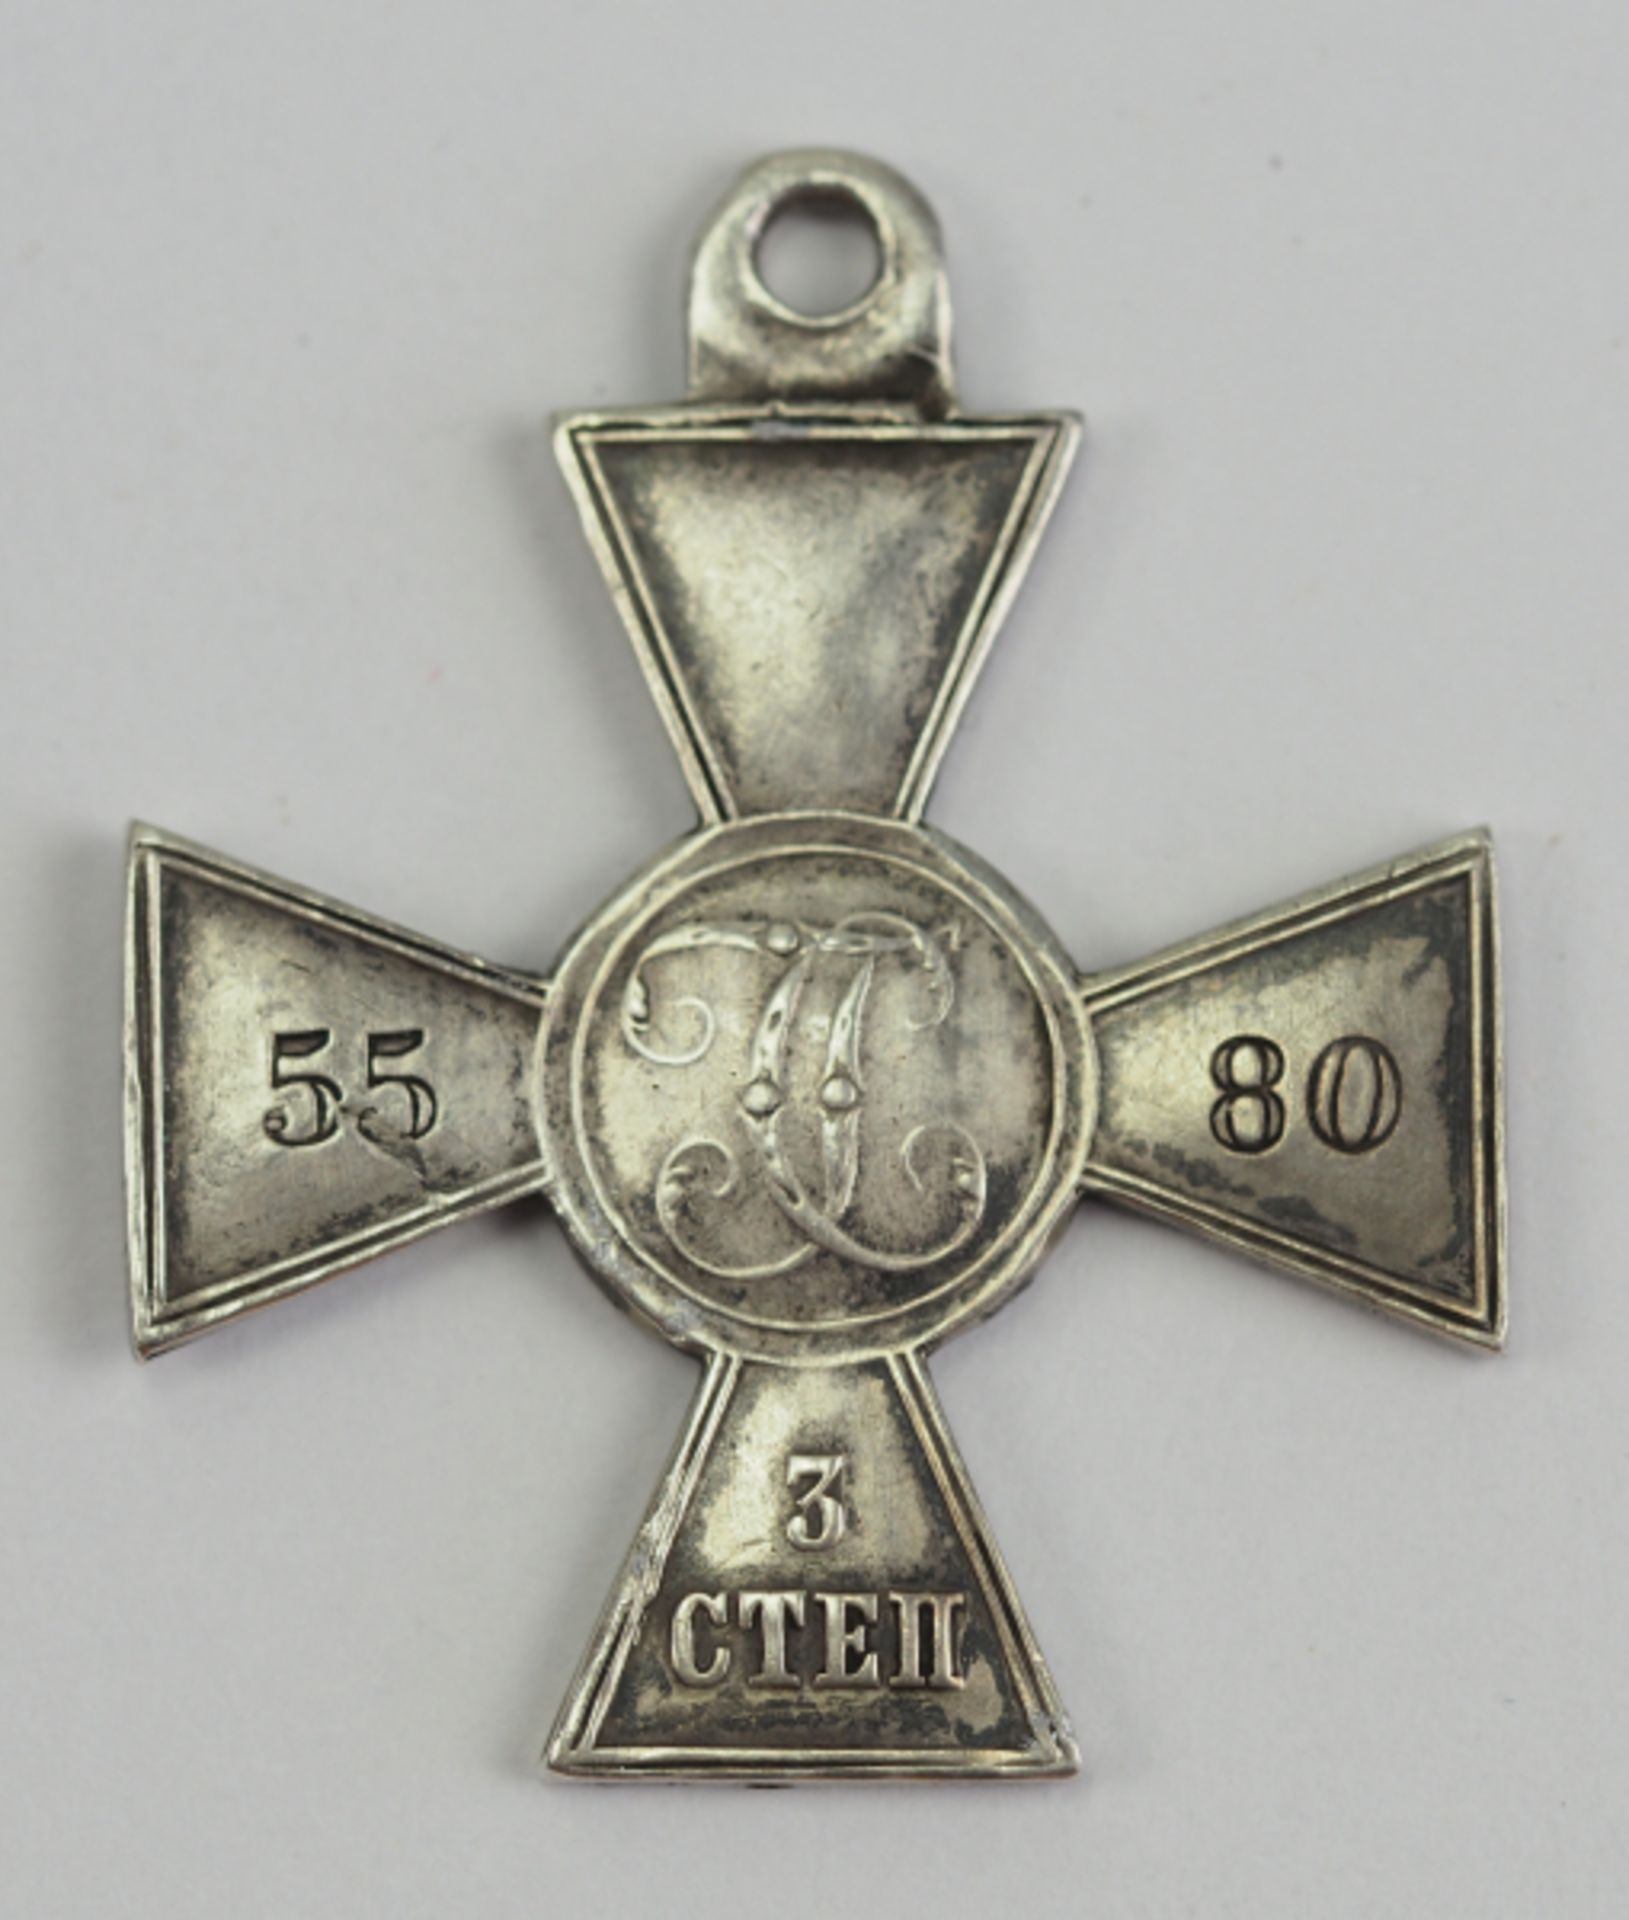 Russland: St. Georgs Orden, Soldatenkreuz, 3. Klasse.Silber, mit geschlagener Matrikelnummer 55 80.